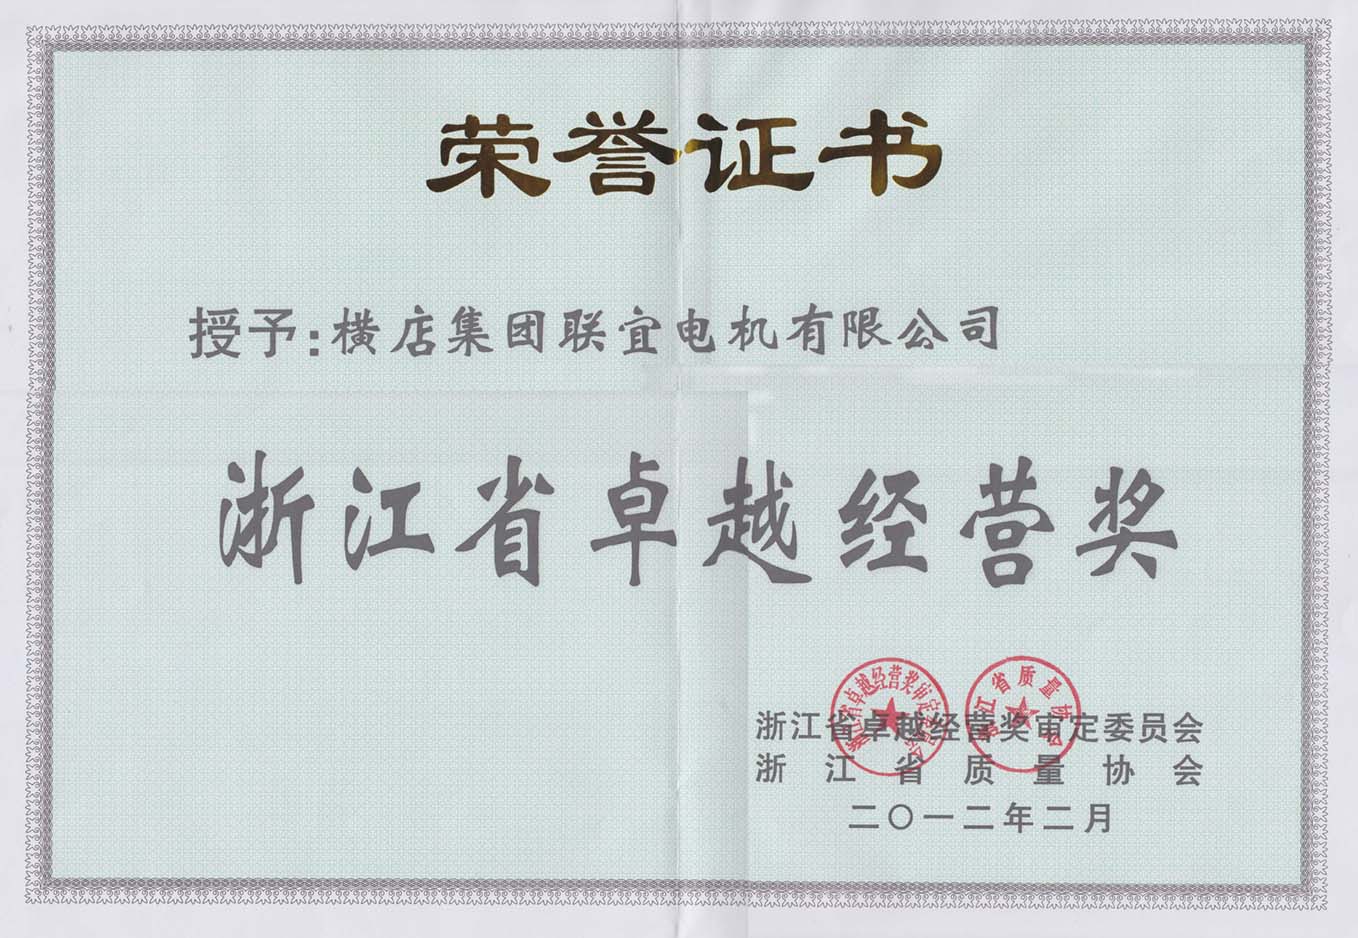 Certificado honorario del Premio a la excelencia empresarial de la provincia de Zhejiang